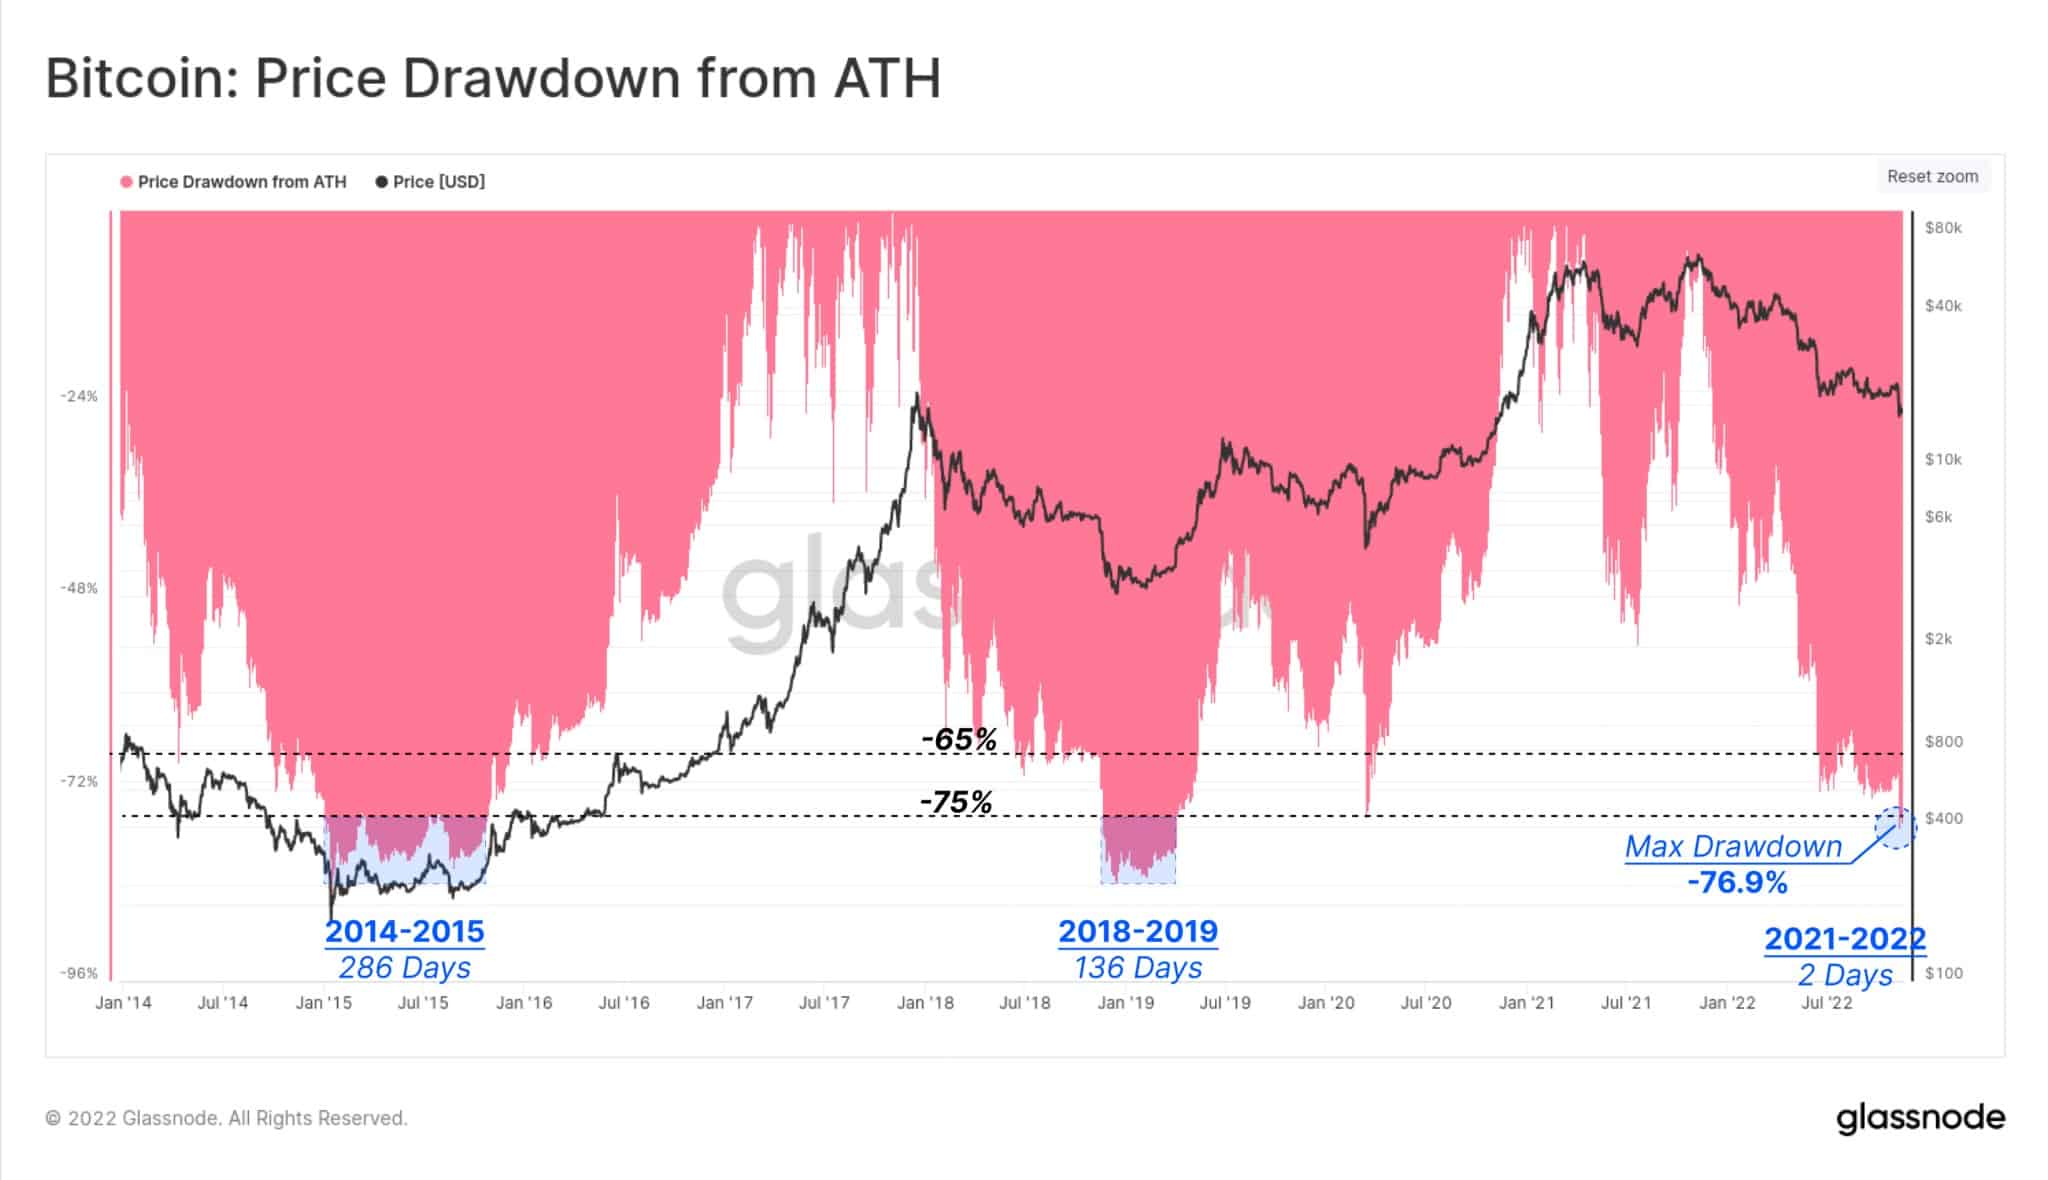 Спад на цената от ATH: (Източник: Glassnode)